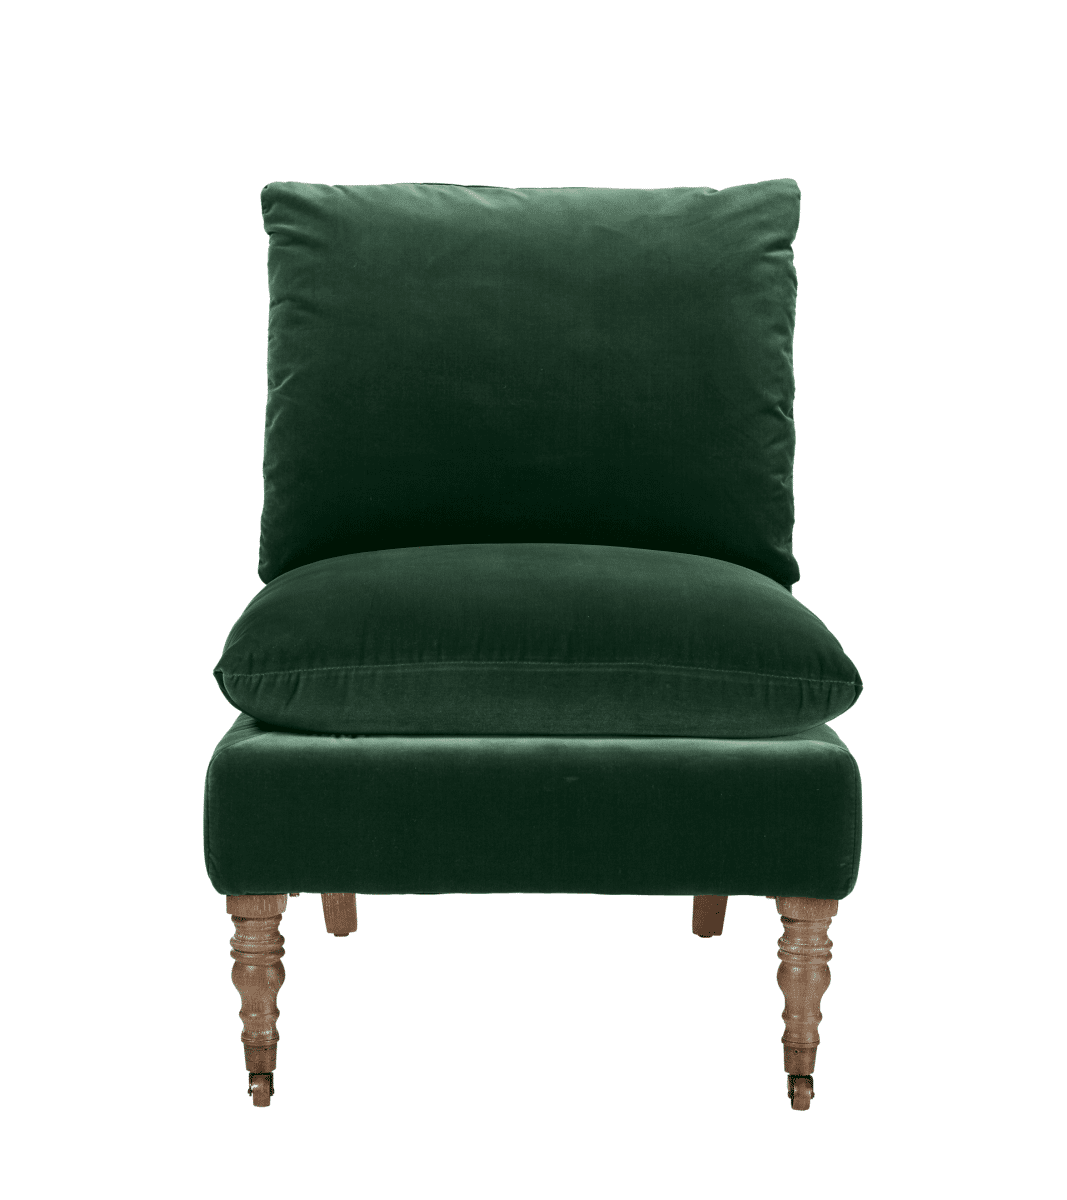 OKA, Apadana Armless Chair - Midnight Green, Armchairs, Velvet, Plain